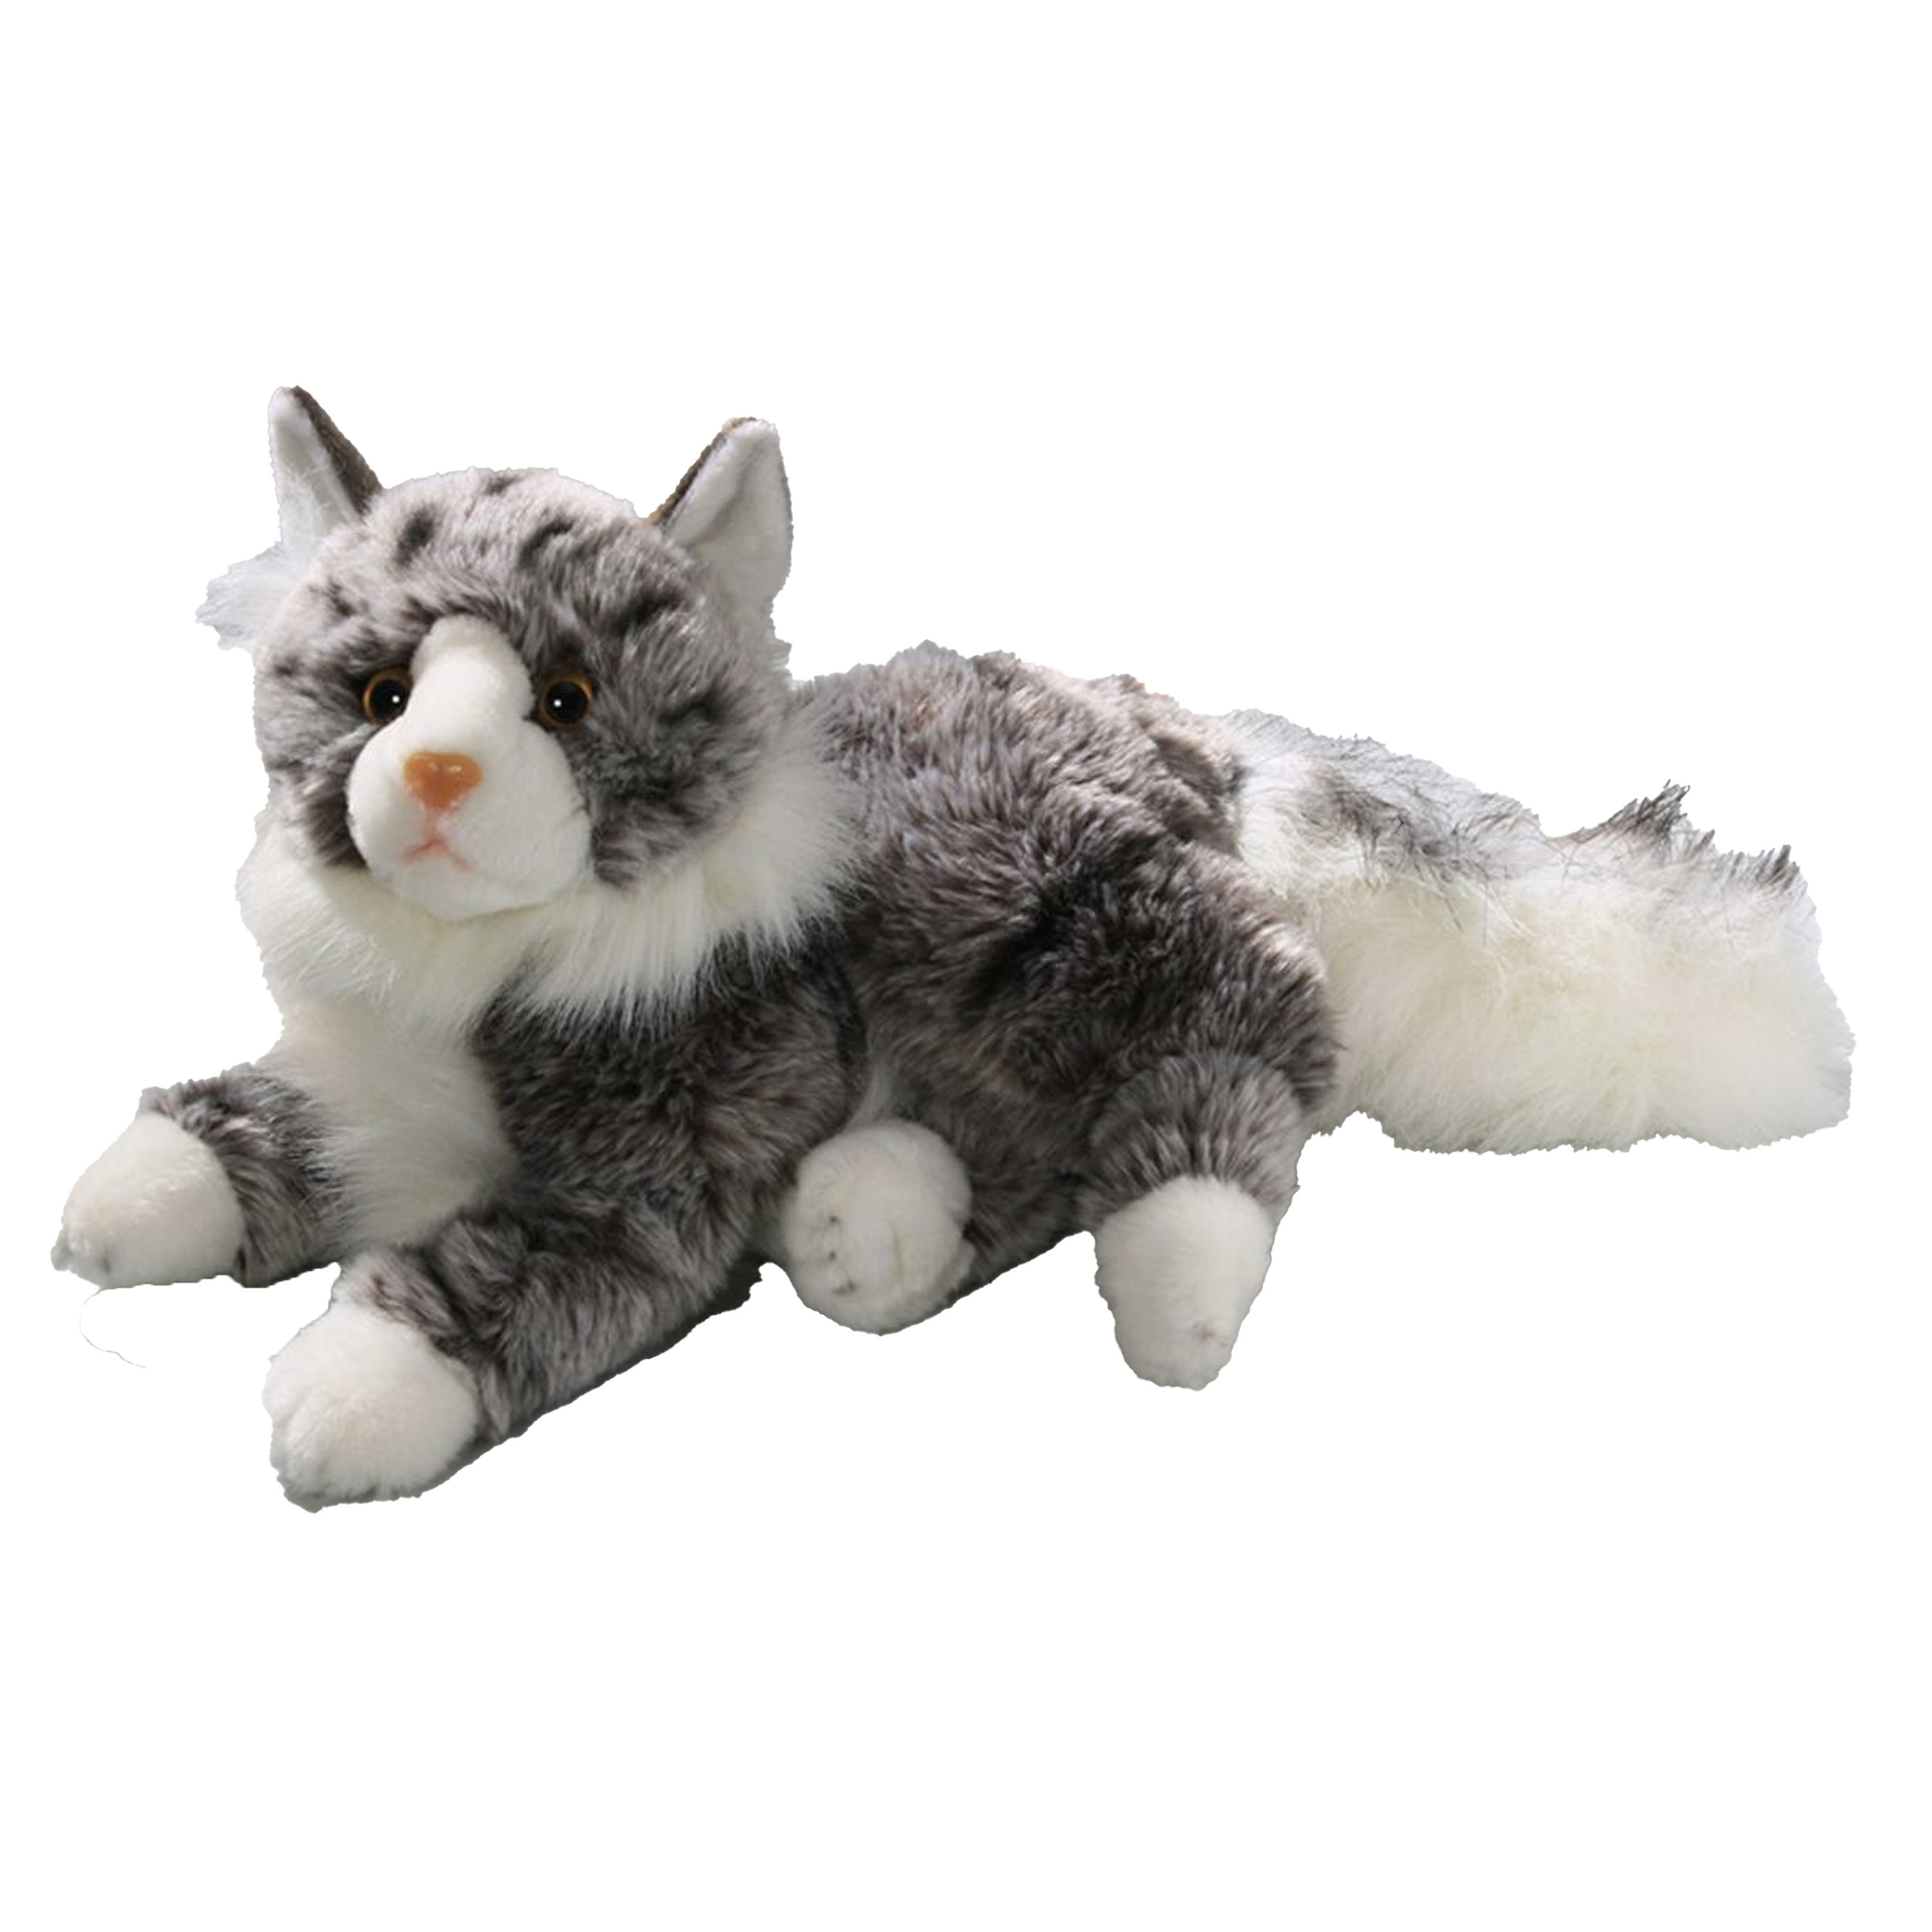 Knuffeldier Perzische kat-poes zachte pluche stof premium kwaliteit knuffels grijs-wit 30 cm